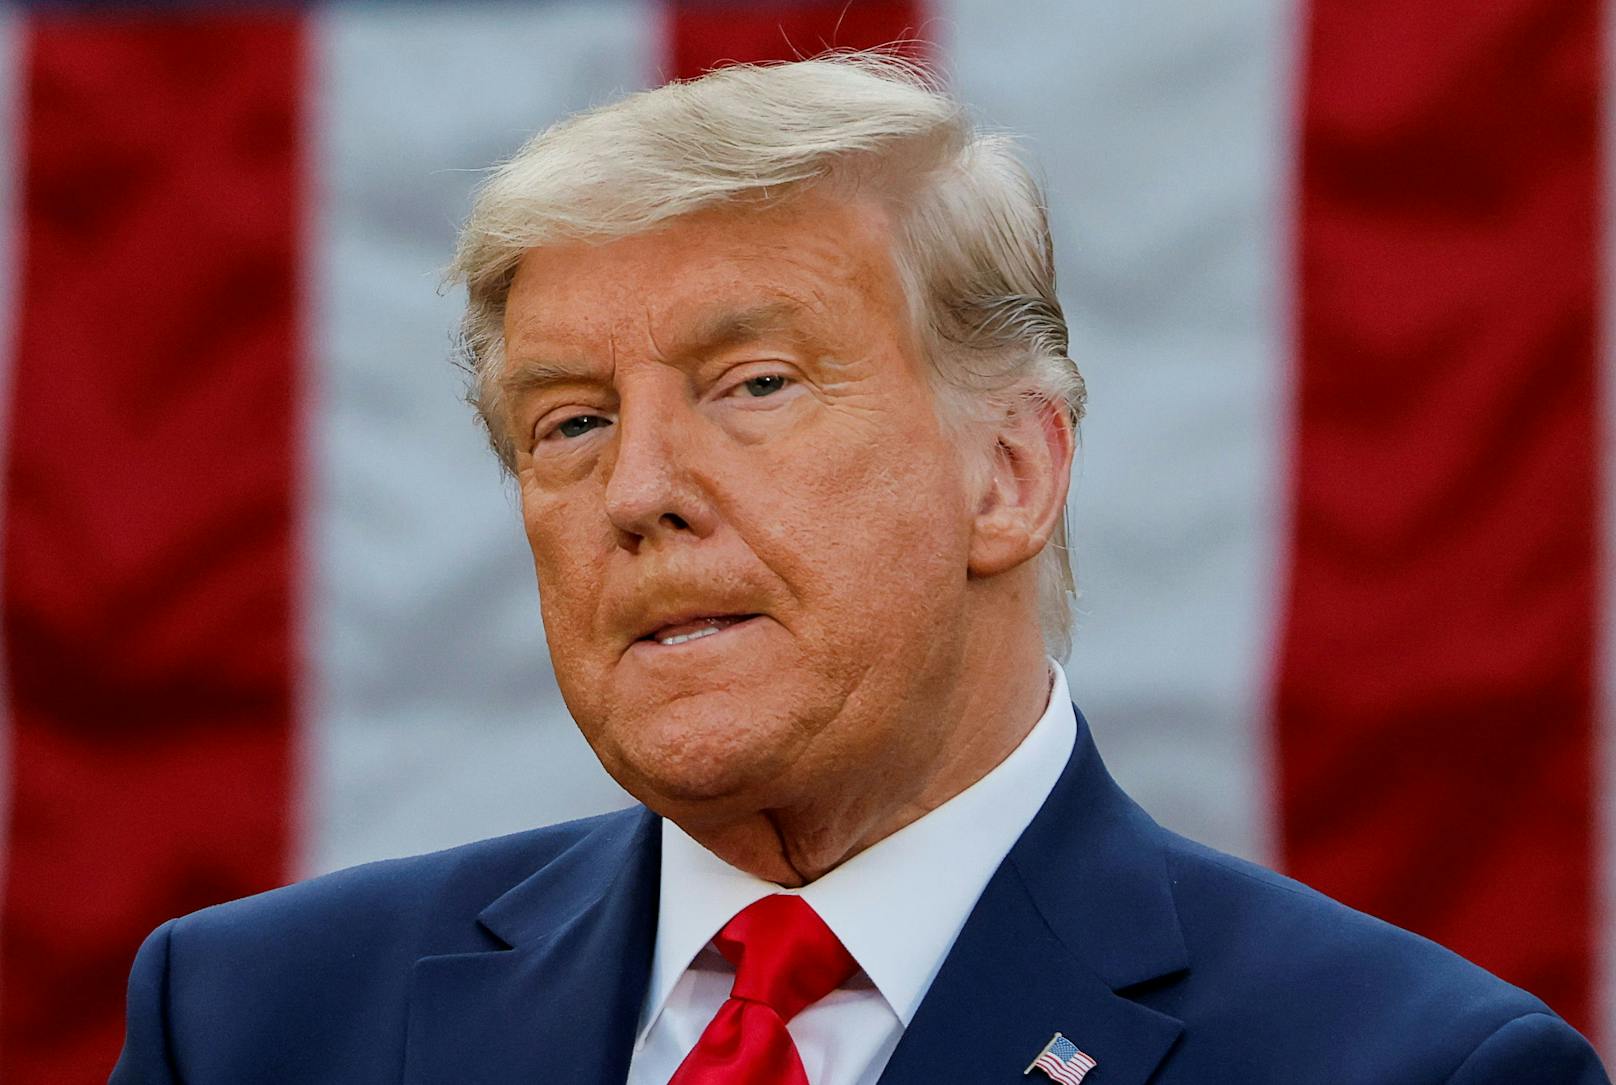 Mehr grau als orange: Donald Trump zeigte sich veränderter Mähne vor den Medien. (13. November 2020)